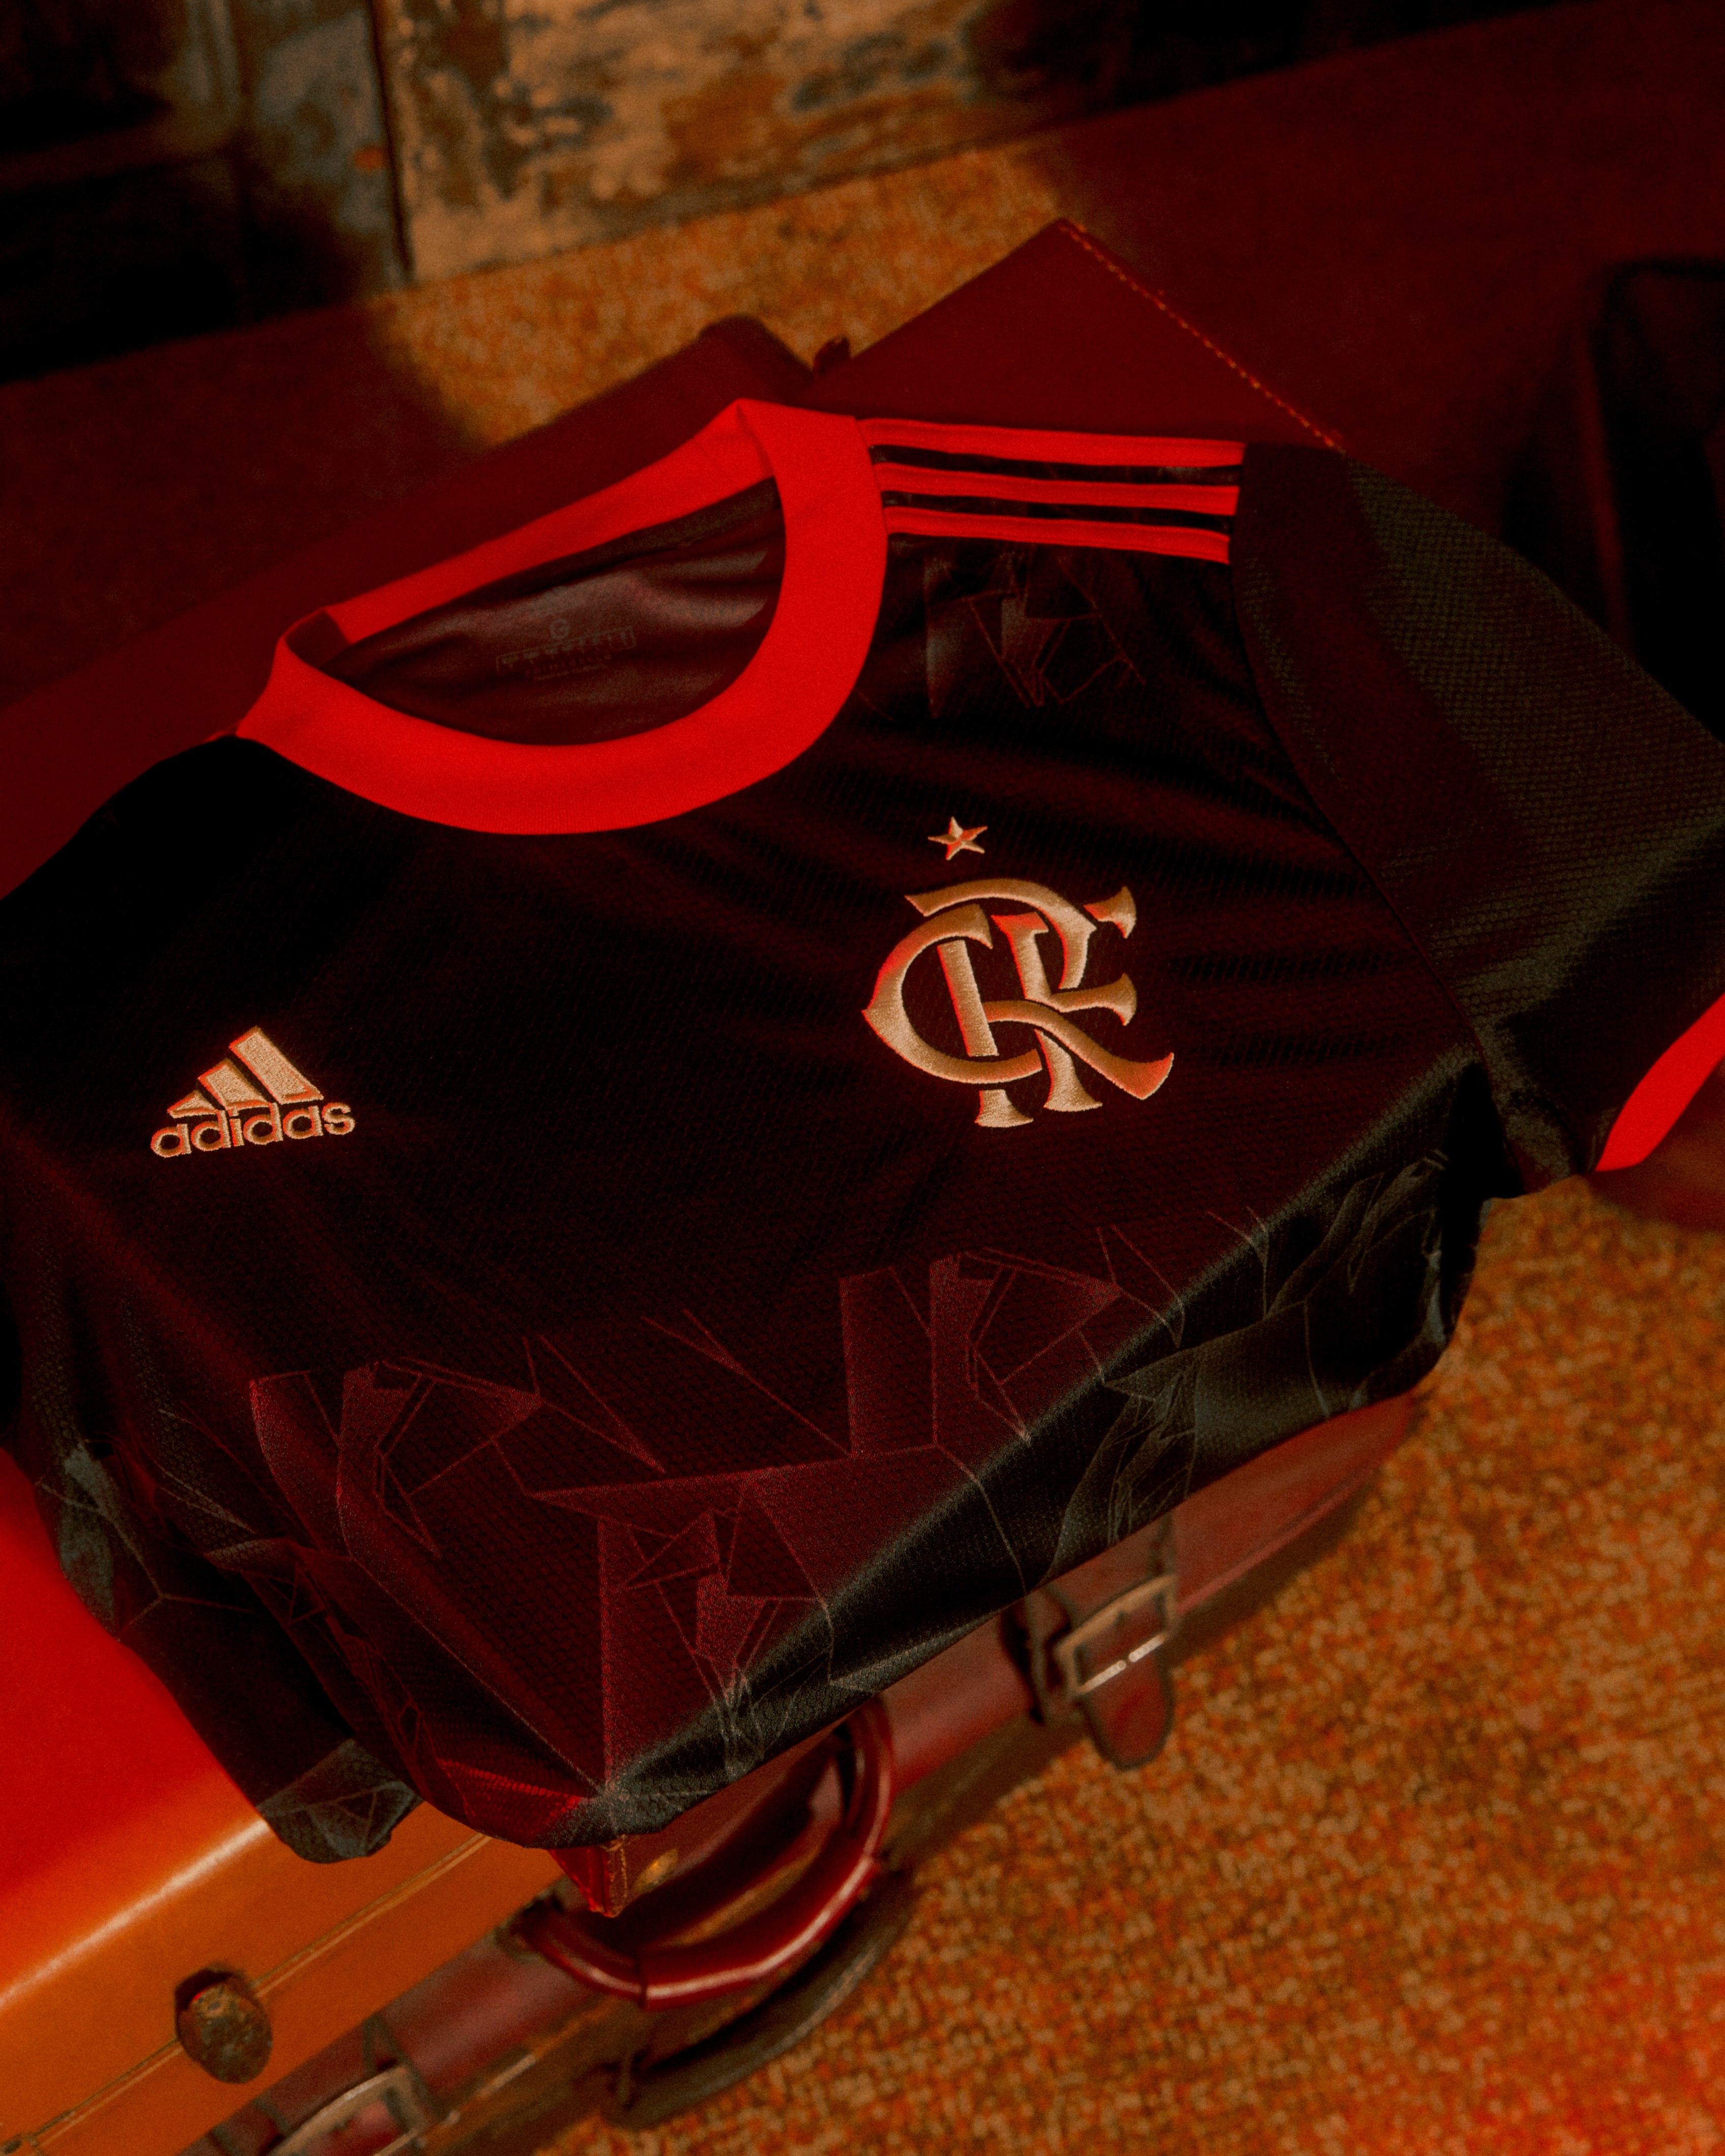 Nova camisa 3 do Flamengo (Foto: Divulgação: Adidas)